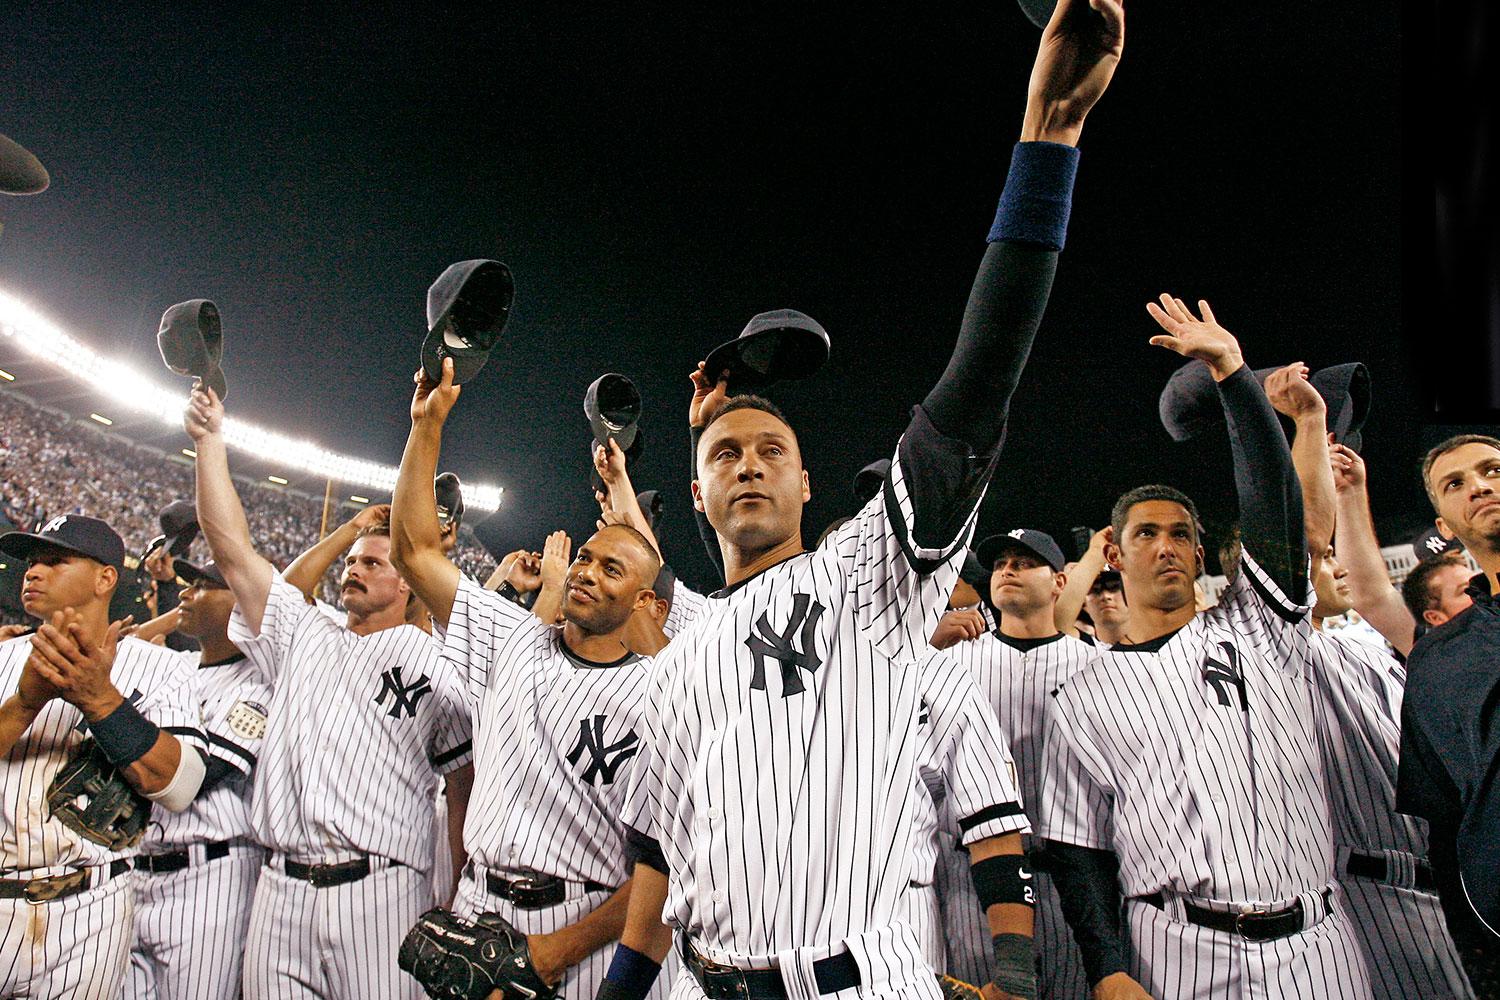 Yankees photographer Ariele Goldman Hecht Derek Jeter